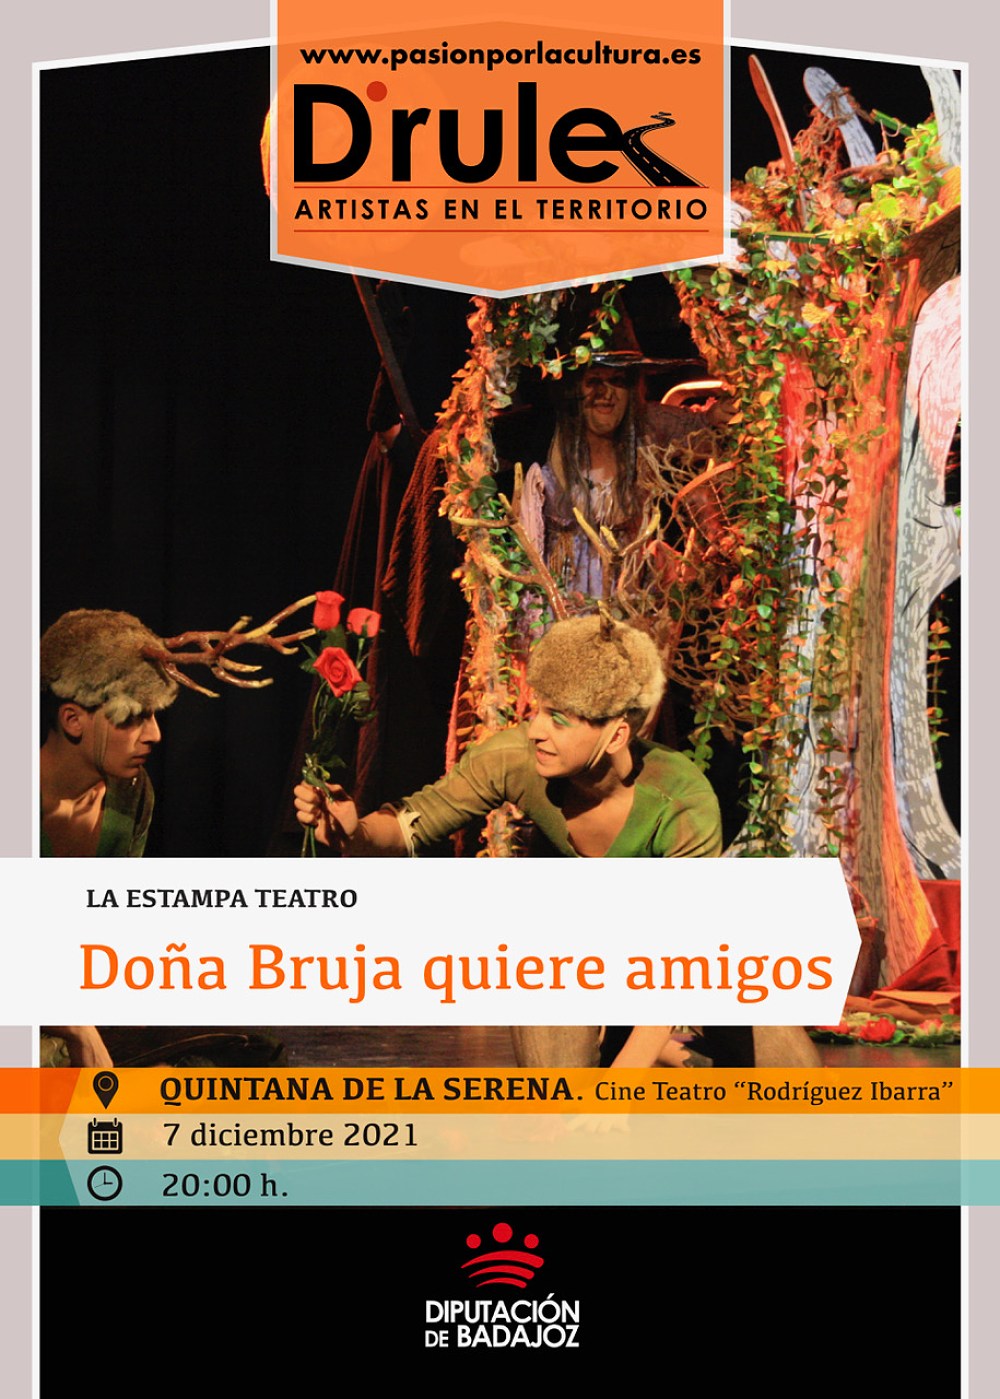 TEATRO | D'Rule 21: «Doña Bruja quiere amigos», de La Estampa Teatro